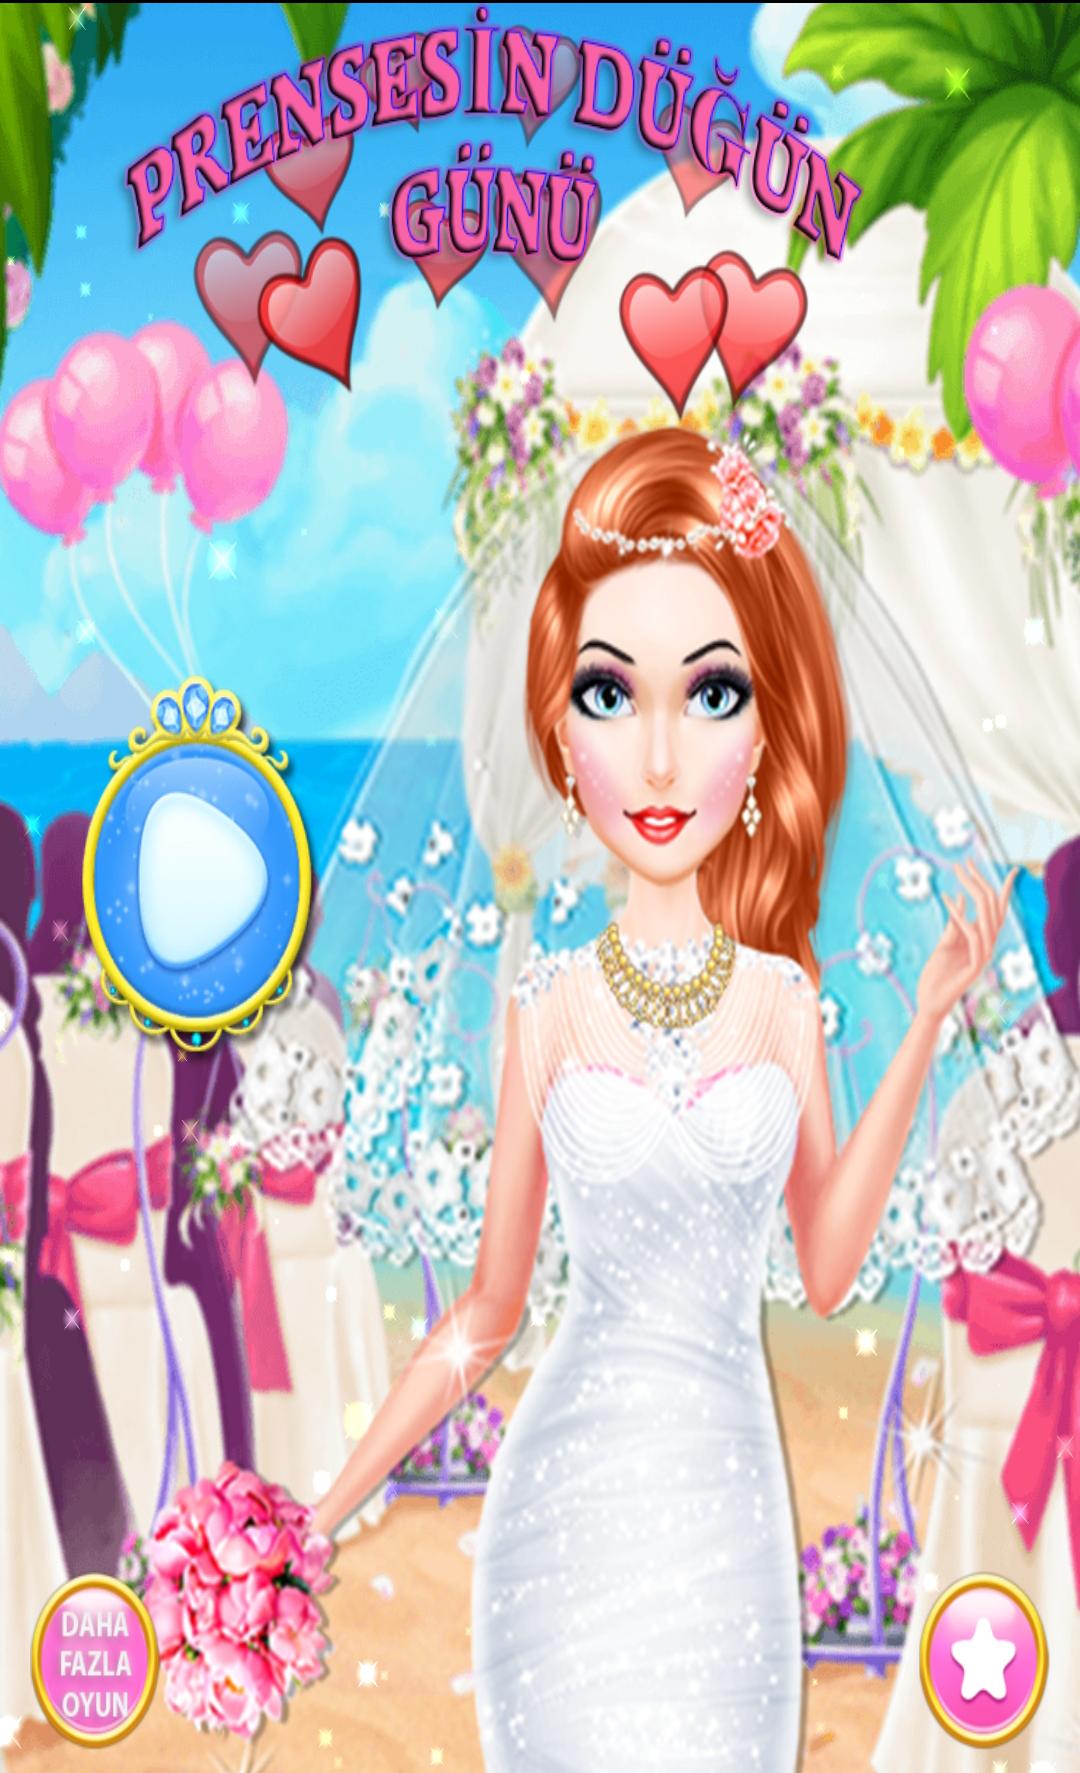 Prenses Düğünü - Ücretsiz Gelinlik Giydirme Oyunu for Android - APK Download